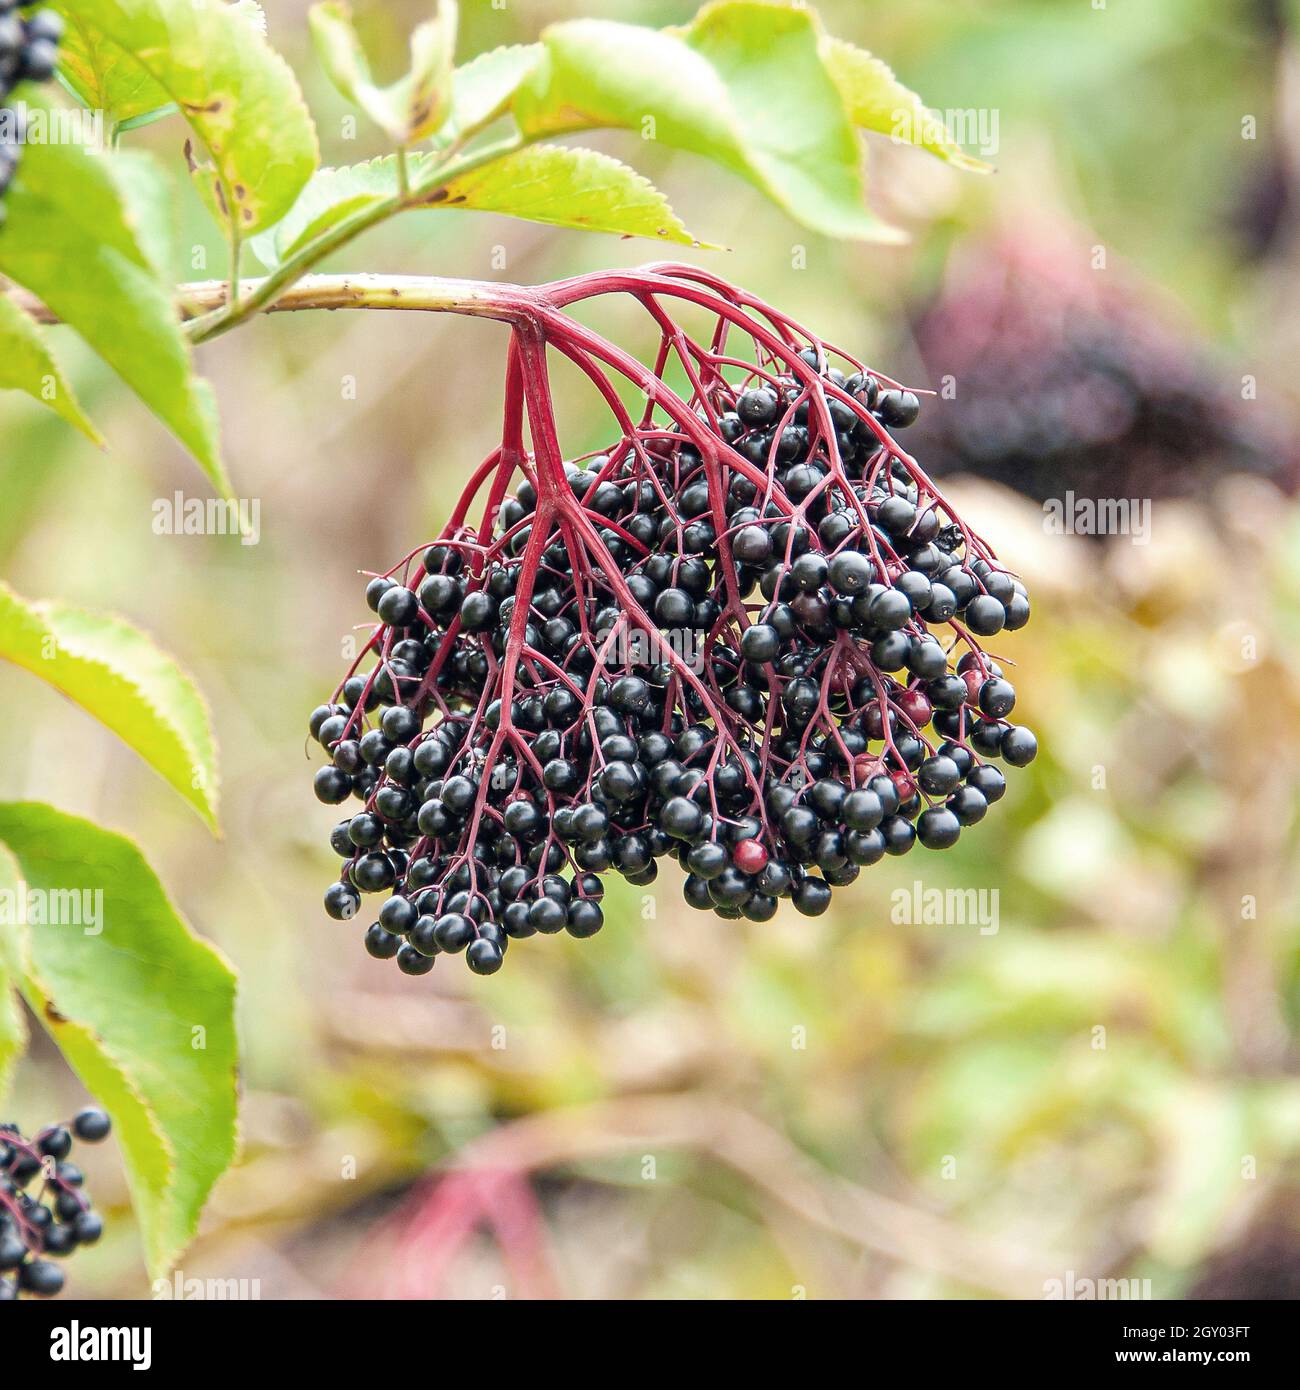 Elan noir européen, Elderberry, ancien commun (Sambucus nigra 'Haidegg 17', Sambucus nigra Haidegg 17), fruits du cultivar Haidegg 17, Allemagne Banque D'Images